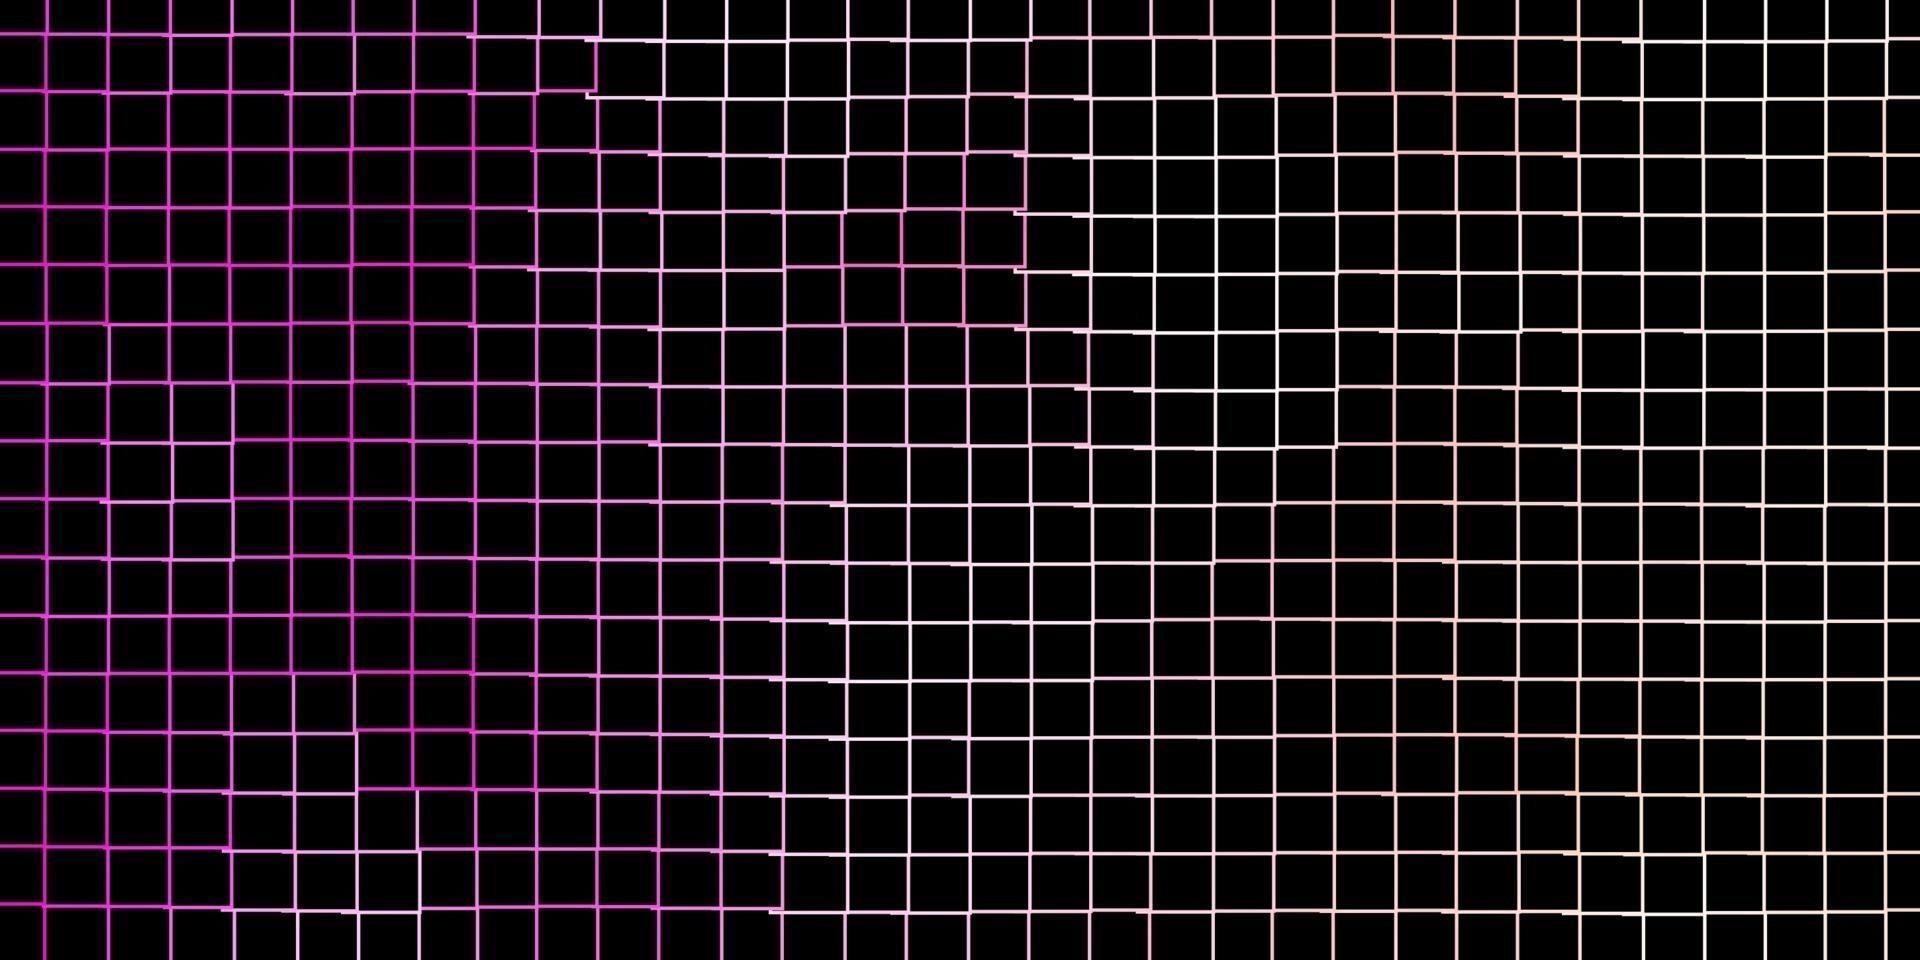 patrón de vector rosa claro en estilo cuadrado.